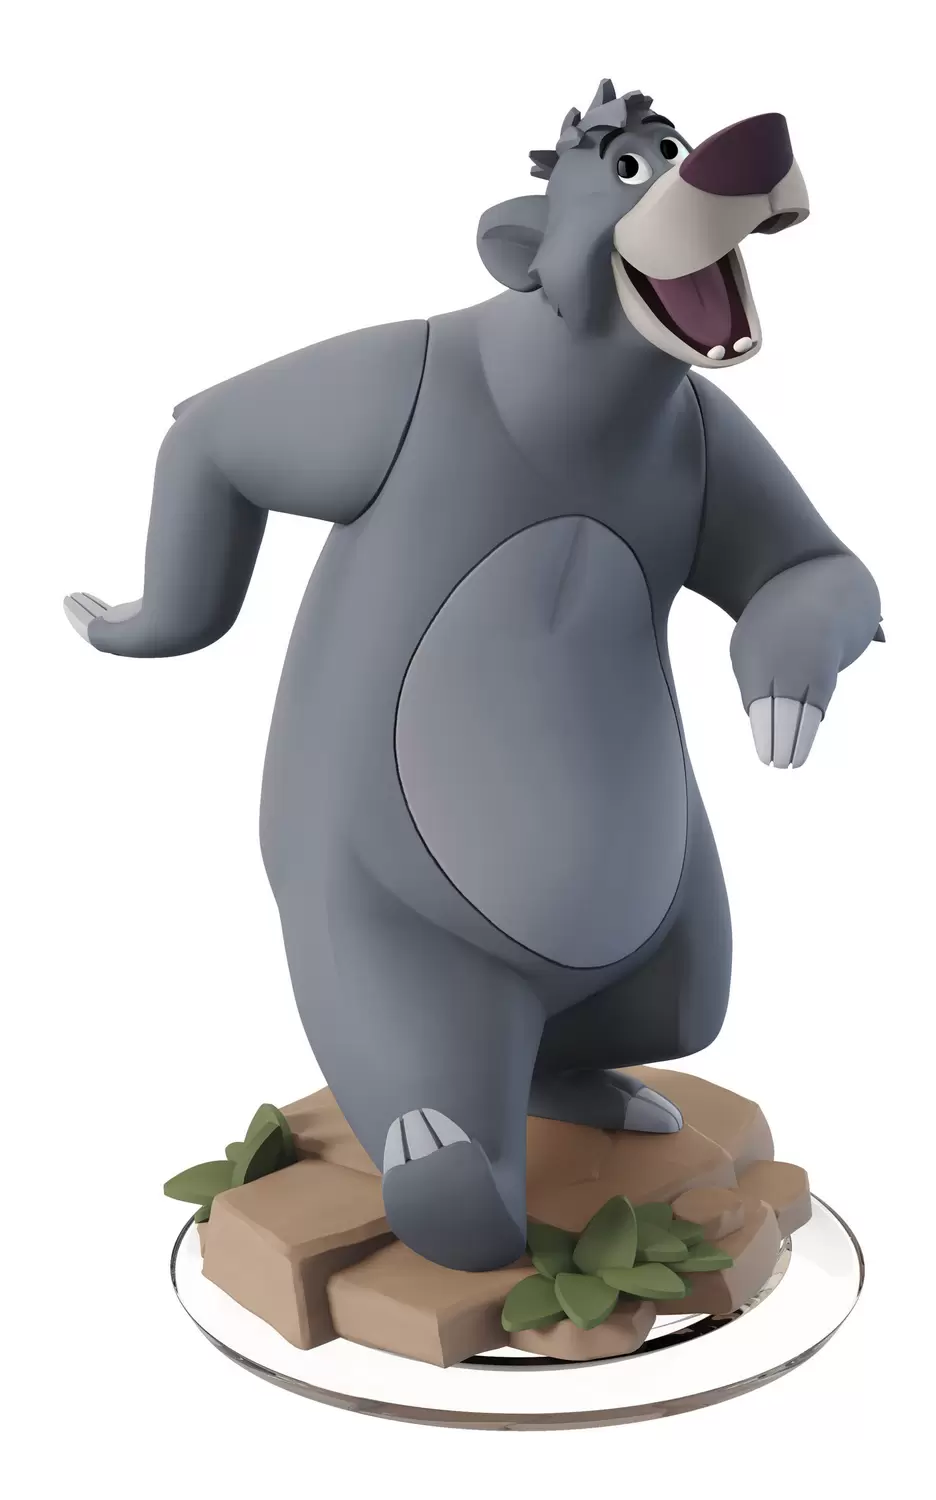 Disney Infinity Action figures - Baloo